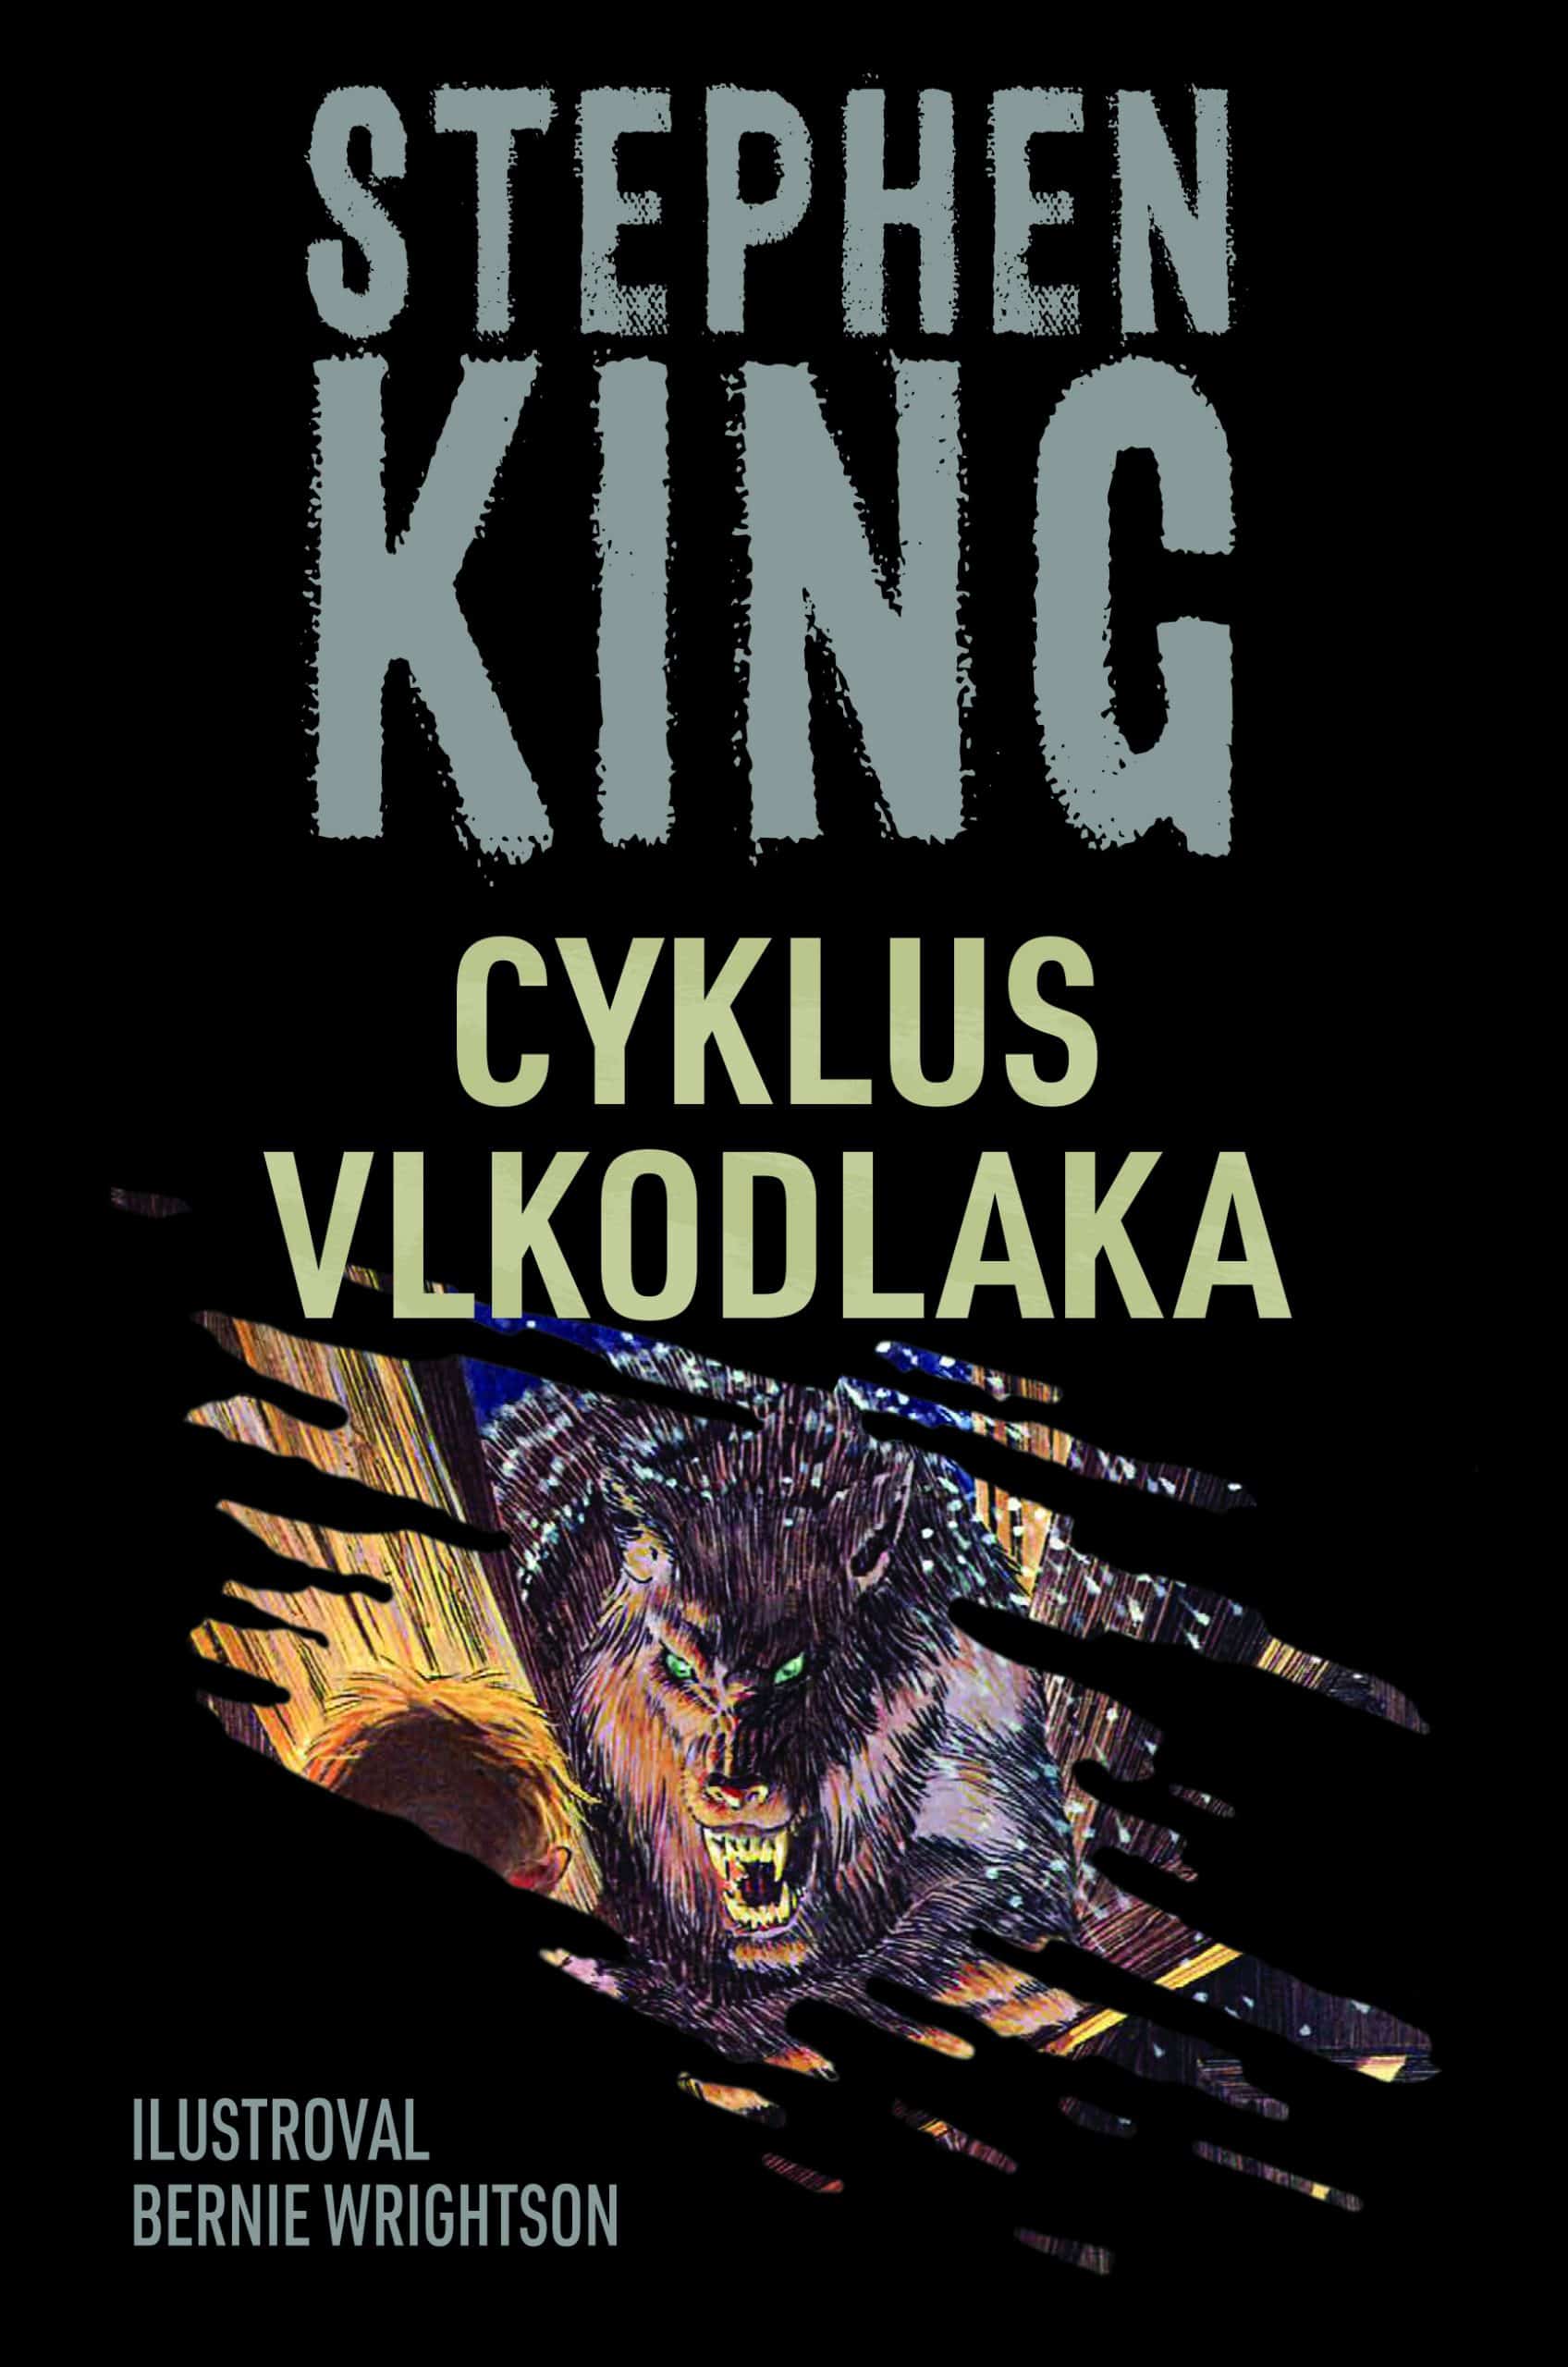 Stephen King: Cyklus vlkodlaka